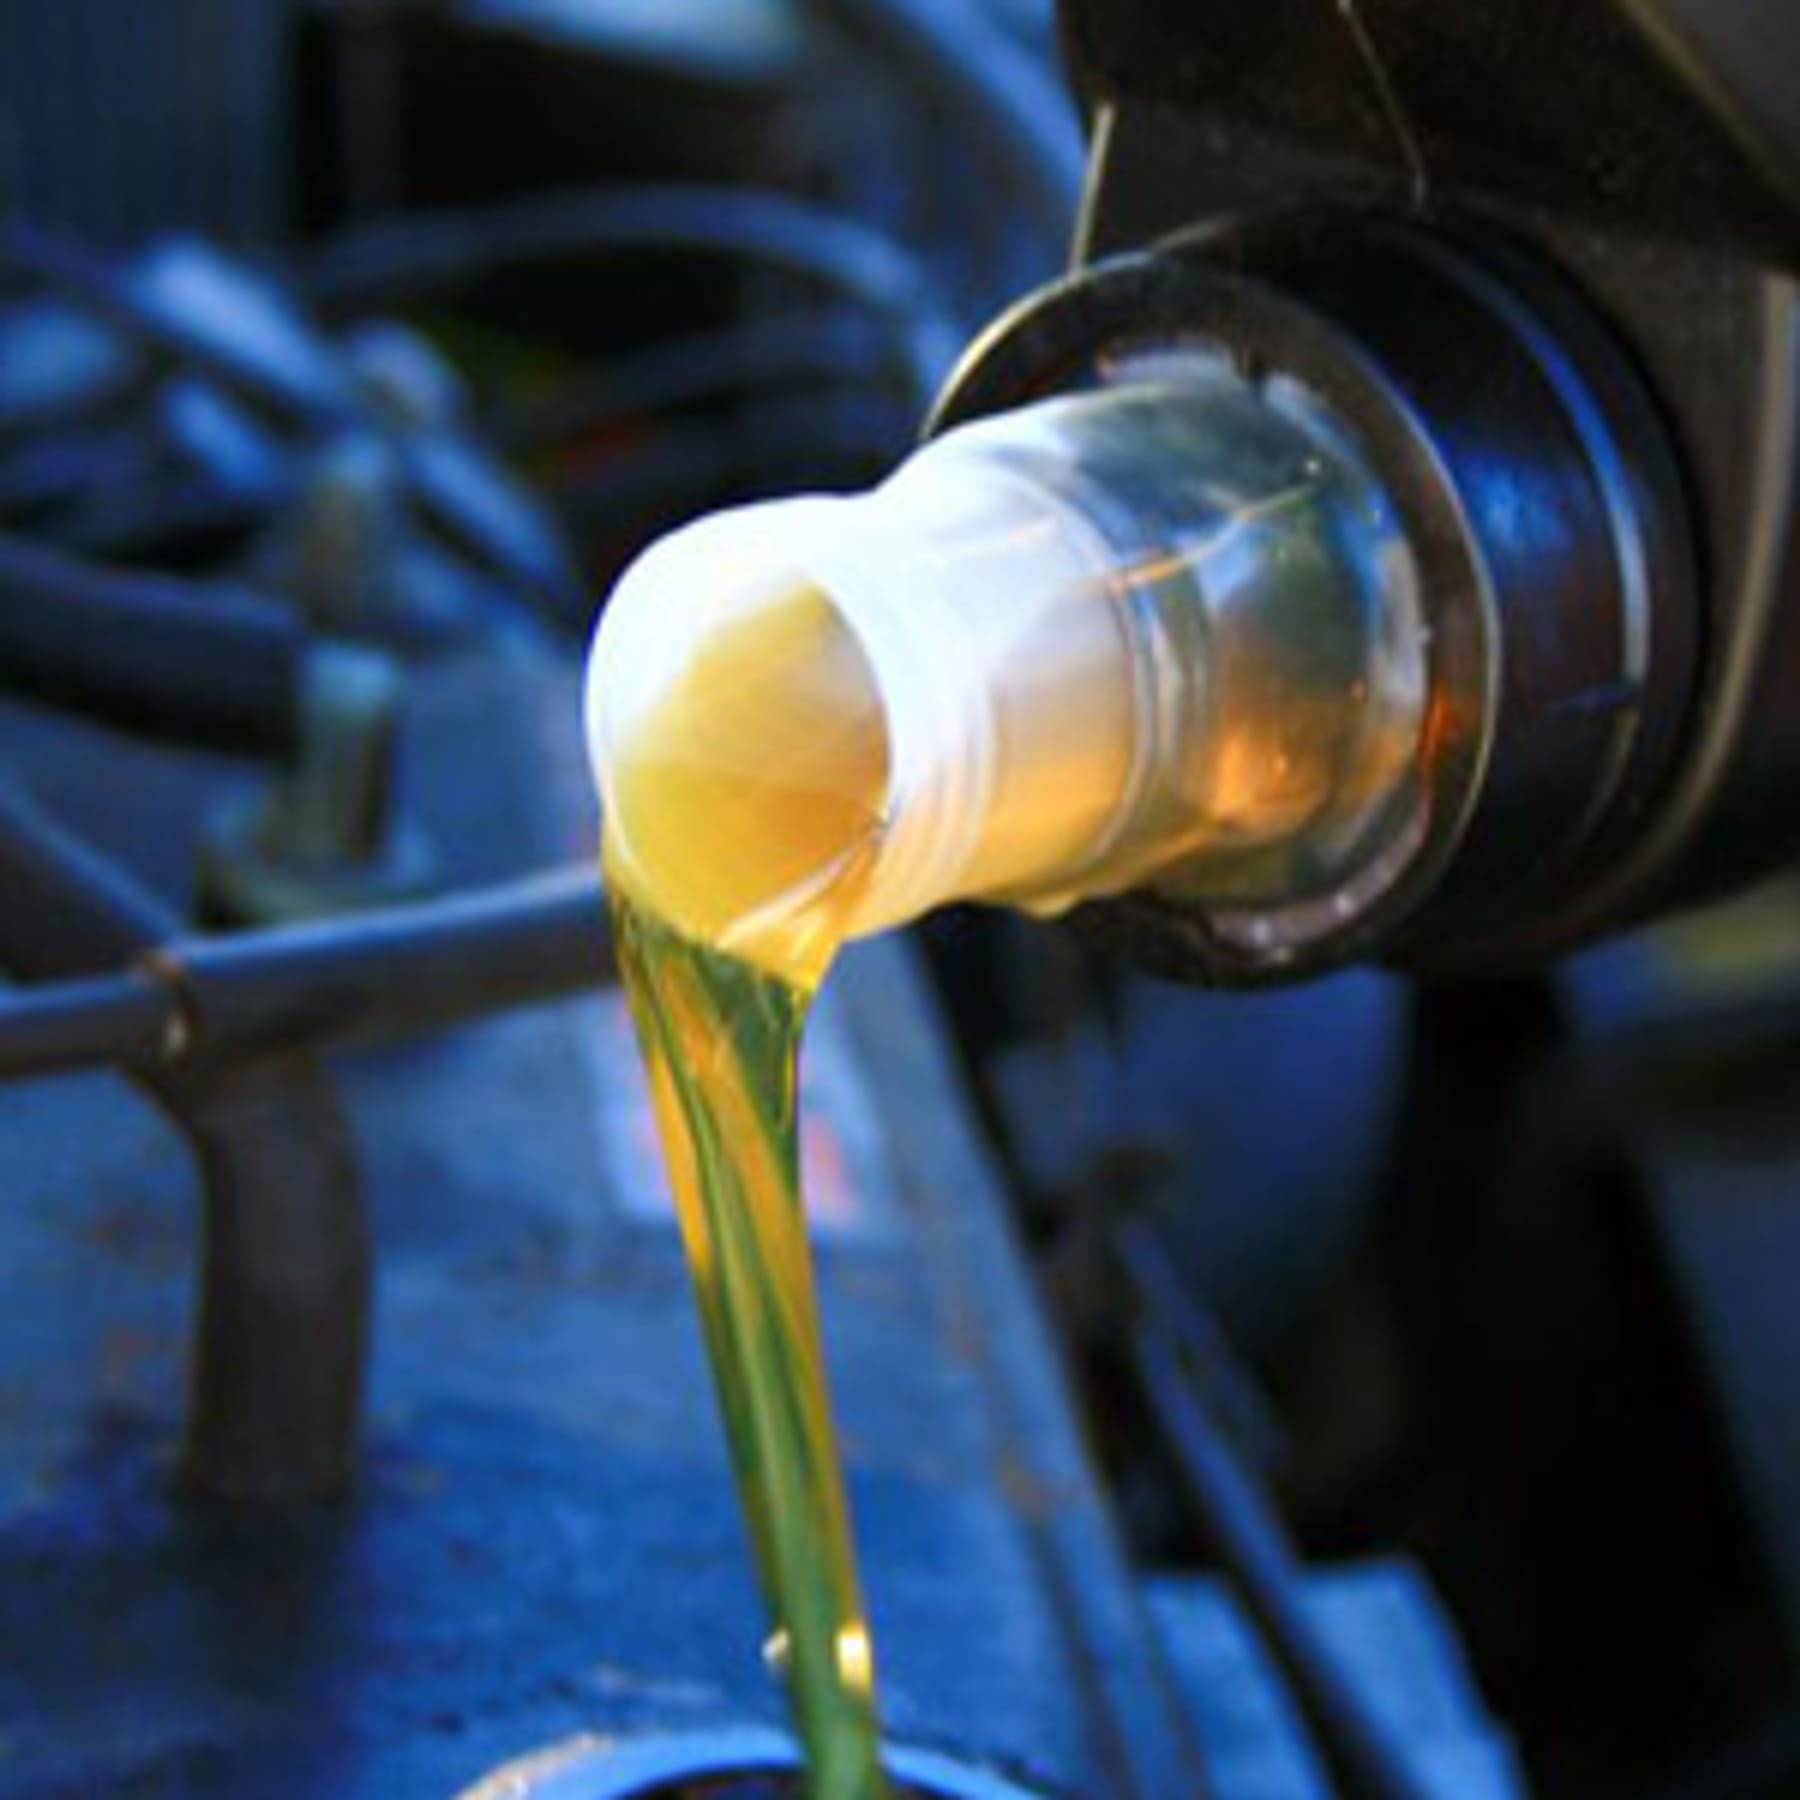 Ölwechsel – Kosten, Intervalle und alle wichtigen Infos